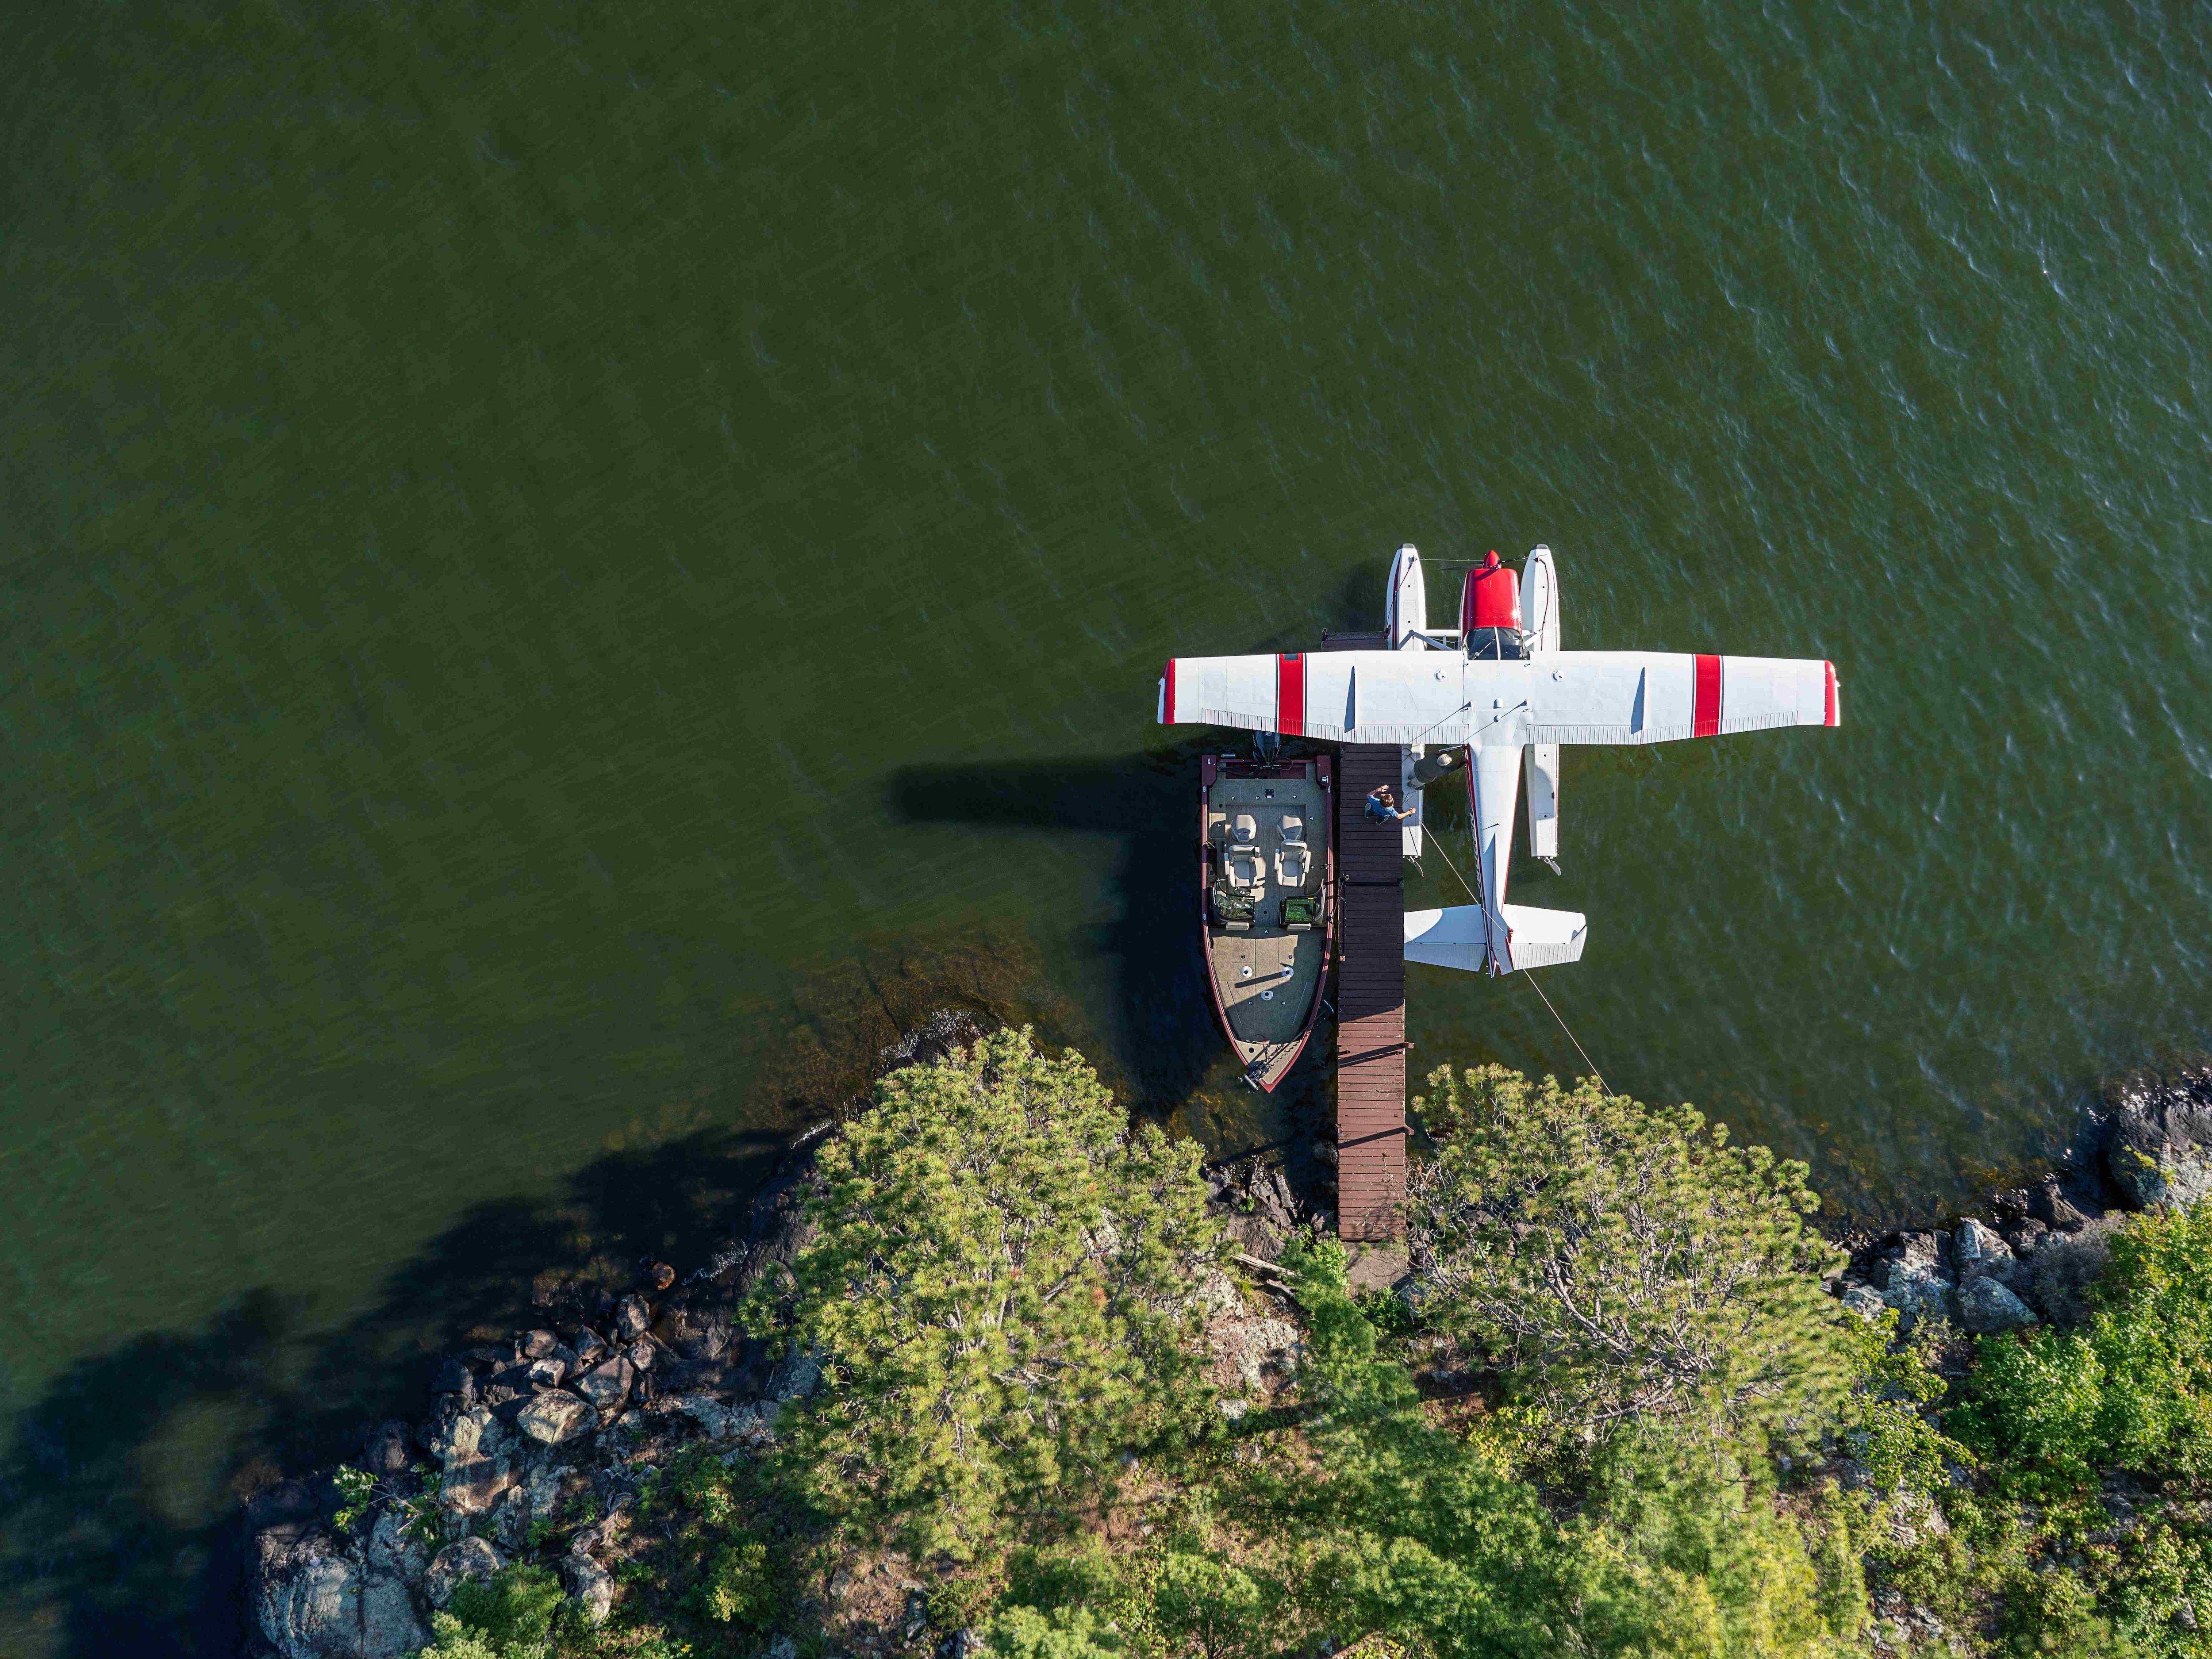 Vue aérienne d'un avion et embarcation Alumacraft sur l'eau